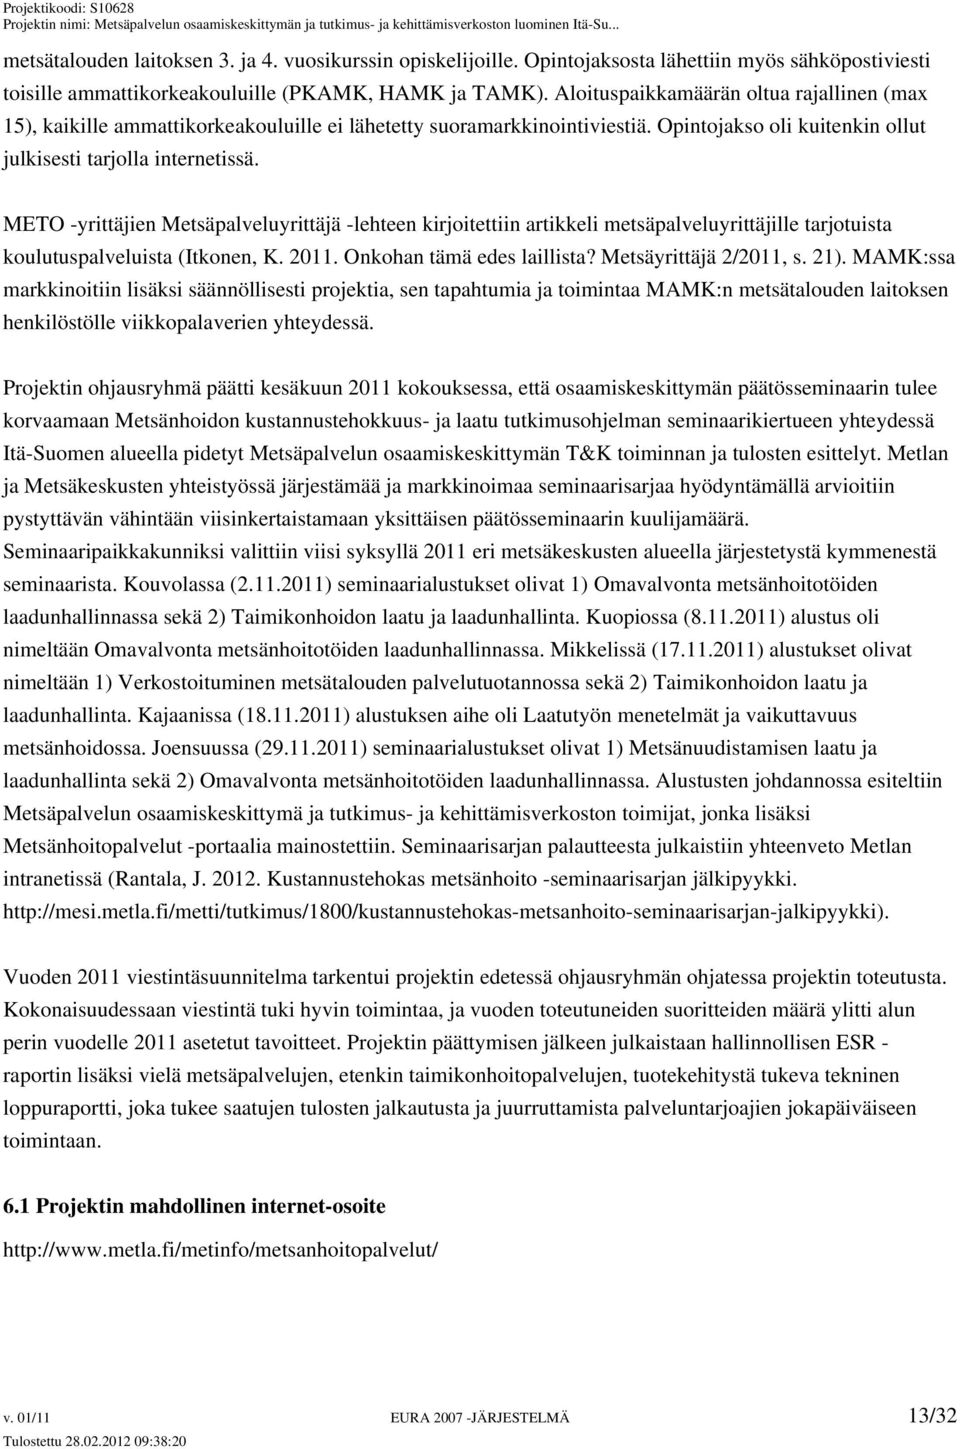 METO -yrittäjien Metsäpalveluyrittäjä -lehteen kirjoitettiin artikkeli metsäpalveluyrittäjille tarjotuista koulutuspalveluista (Itkonen, K. 2011. Onkohan tämä edes laillista? Metsäyrittäjä 2/2011, s.